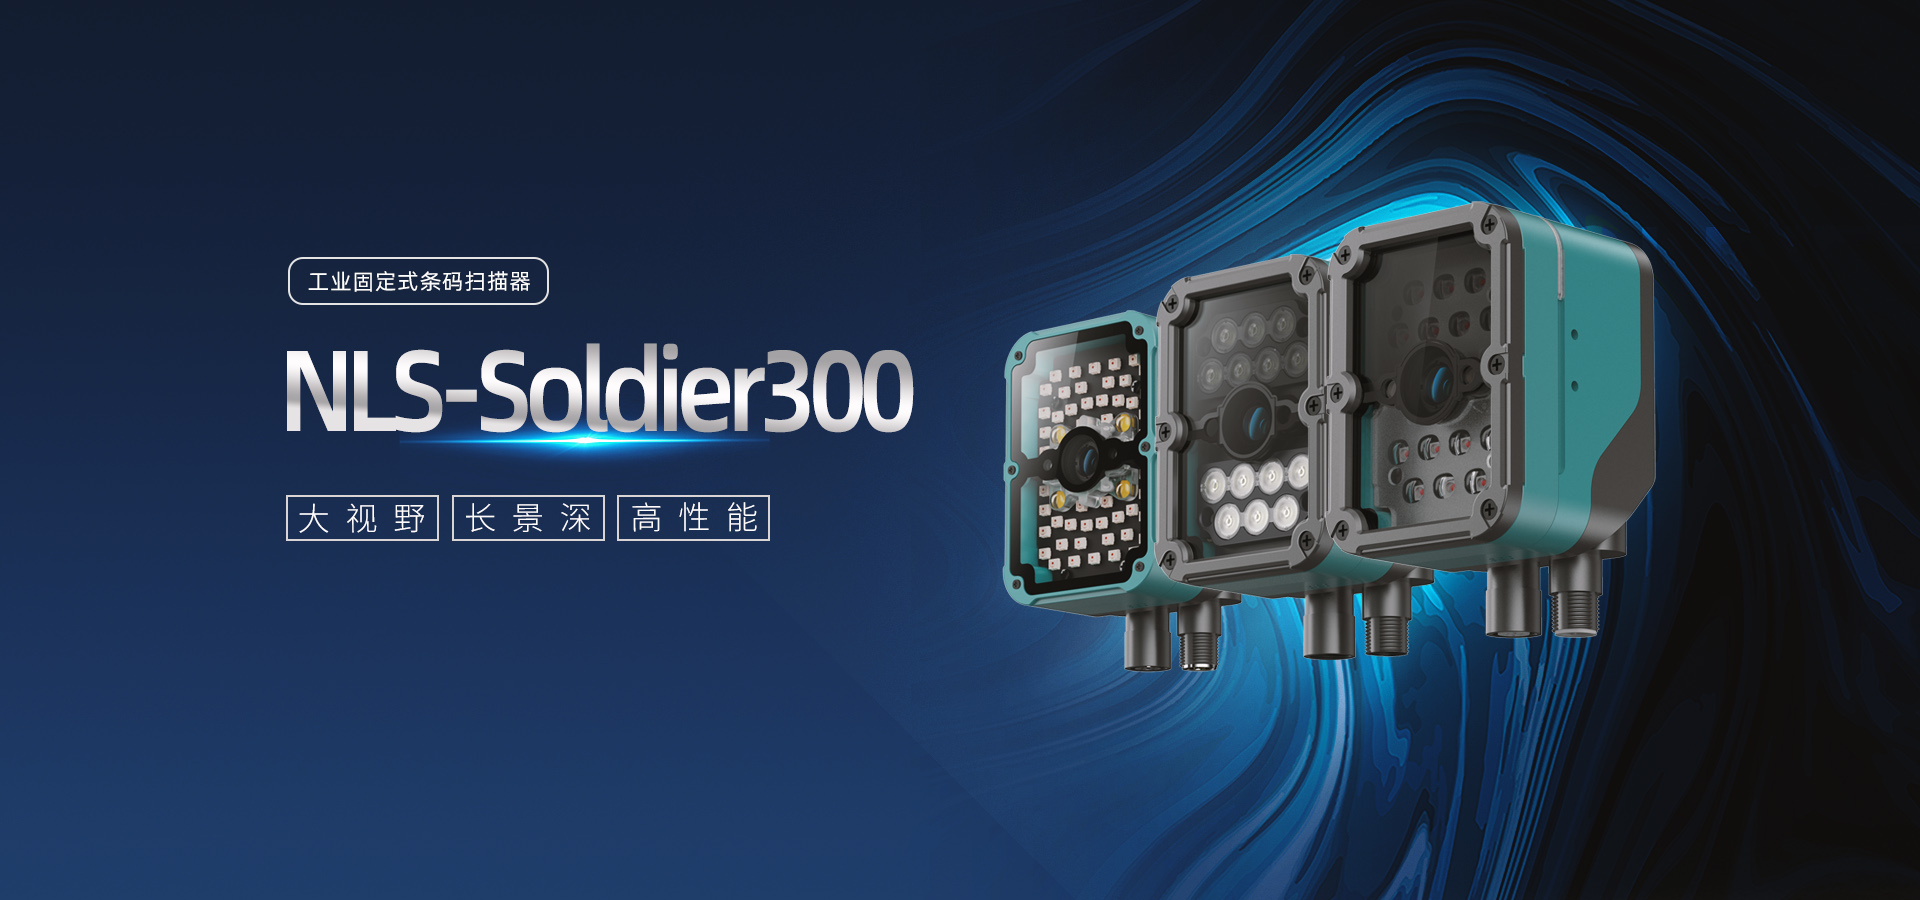 NLS-Soldier300N